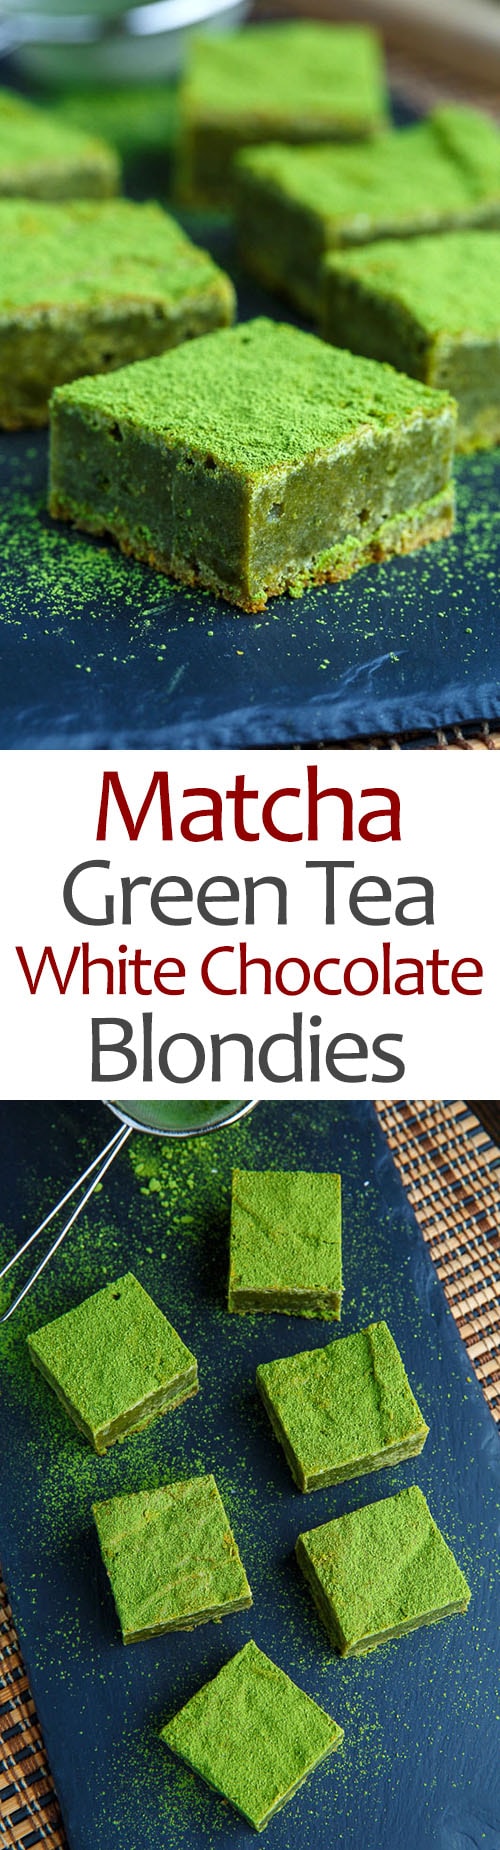 Matcha Green Tea White Chocolate Blondies